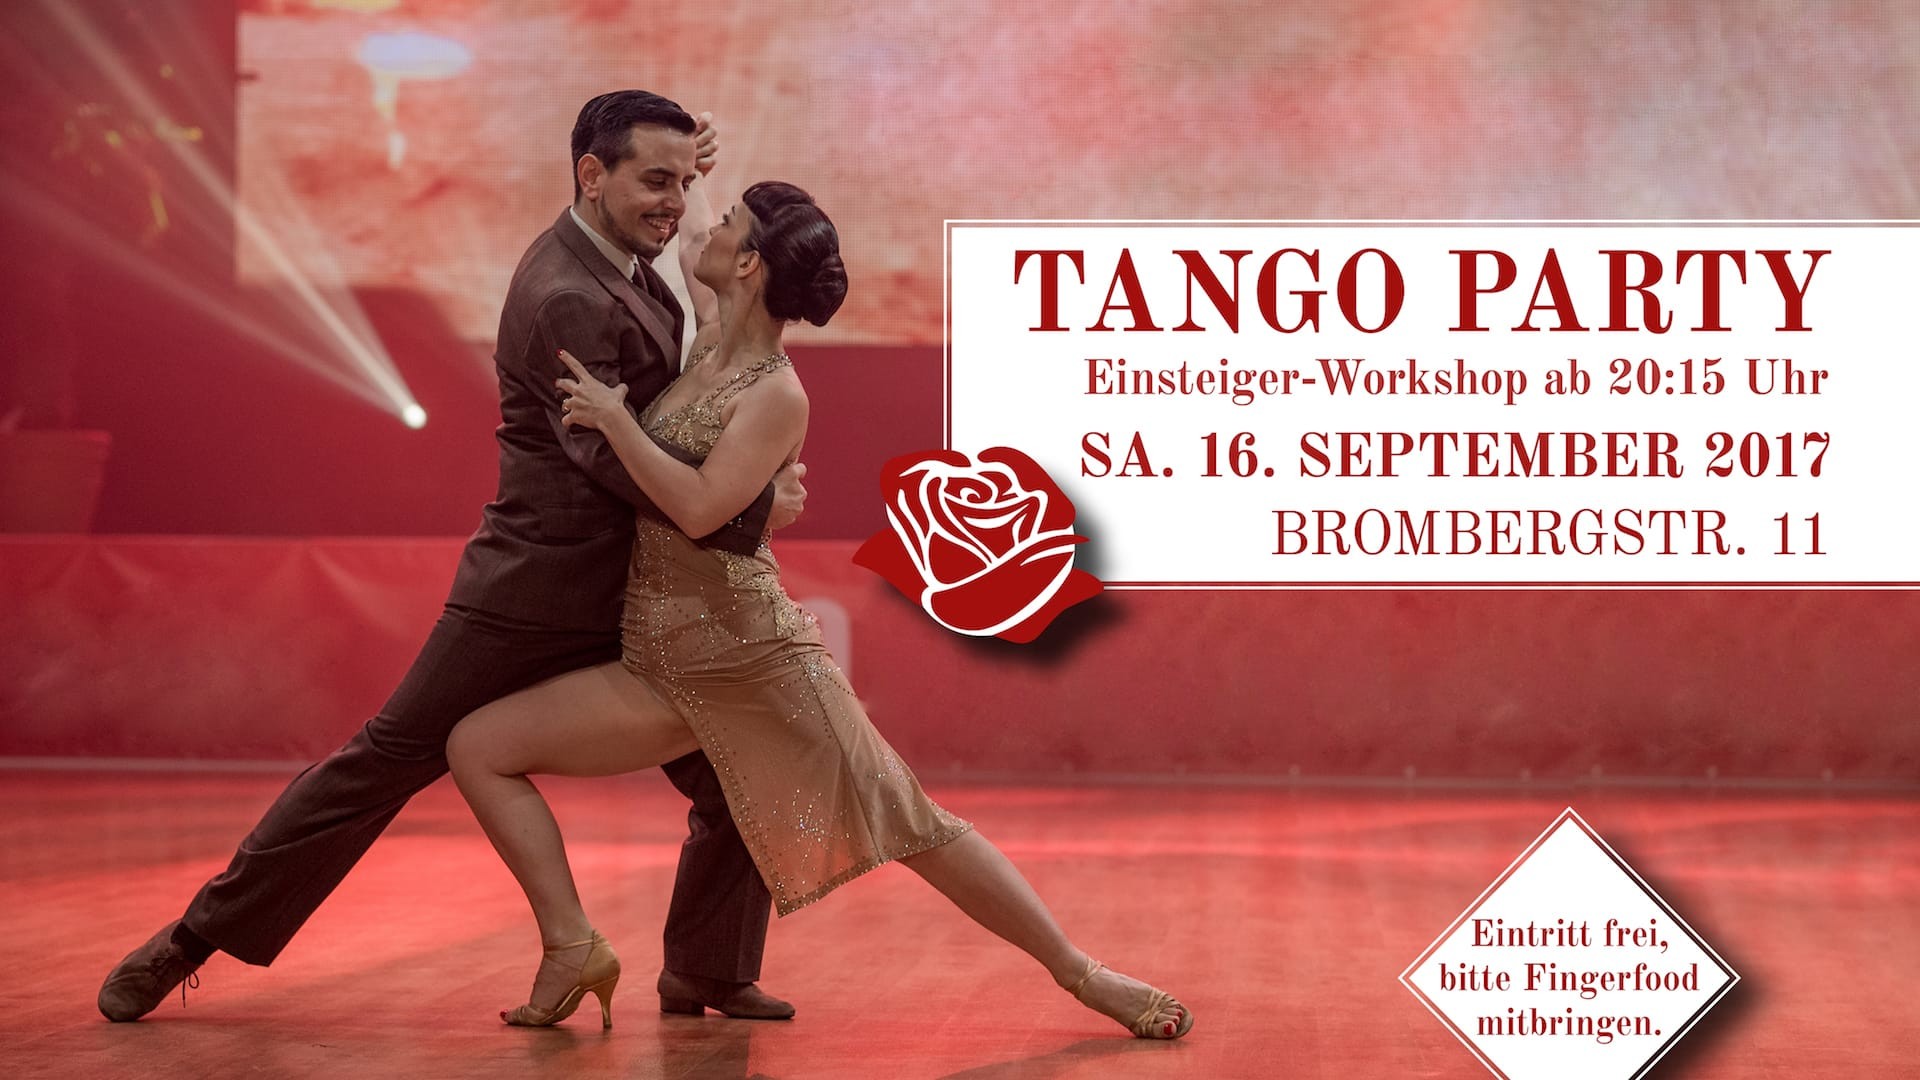 1920x1080 Tango Party